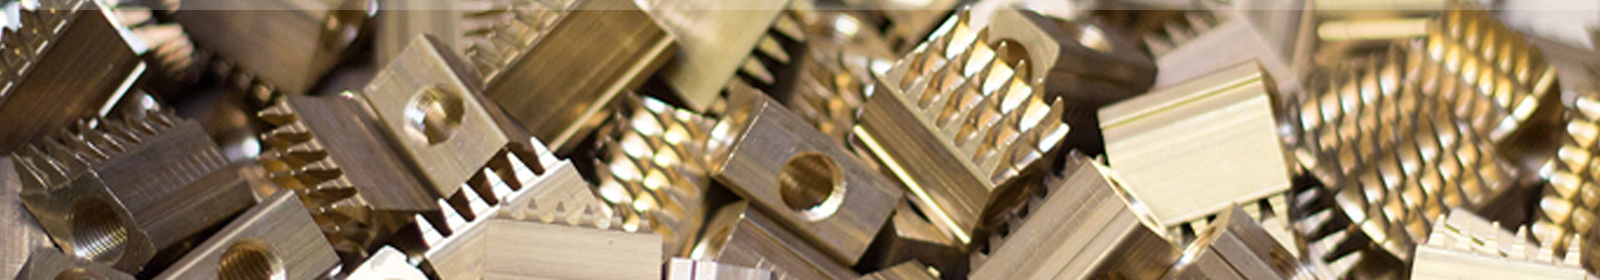 Rieger Metallveredlung – Copper alloys